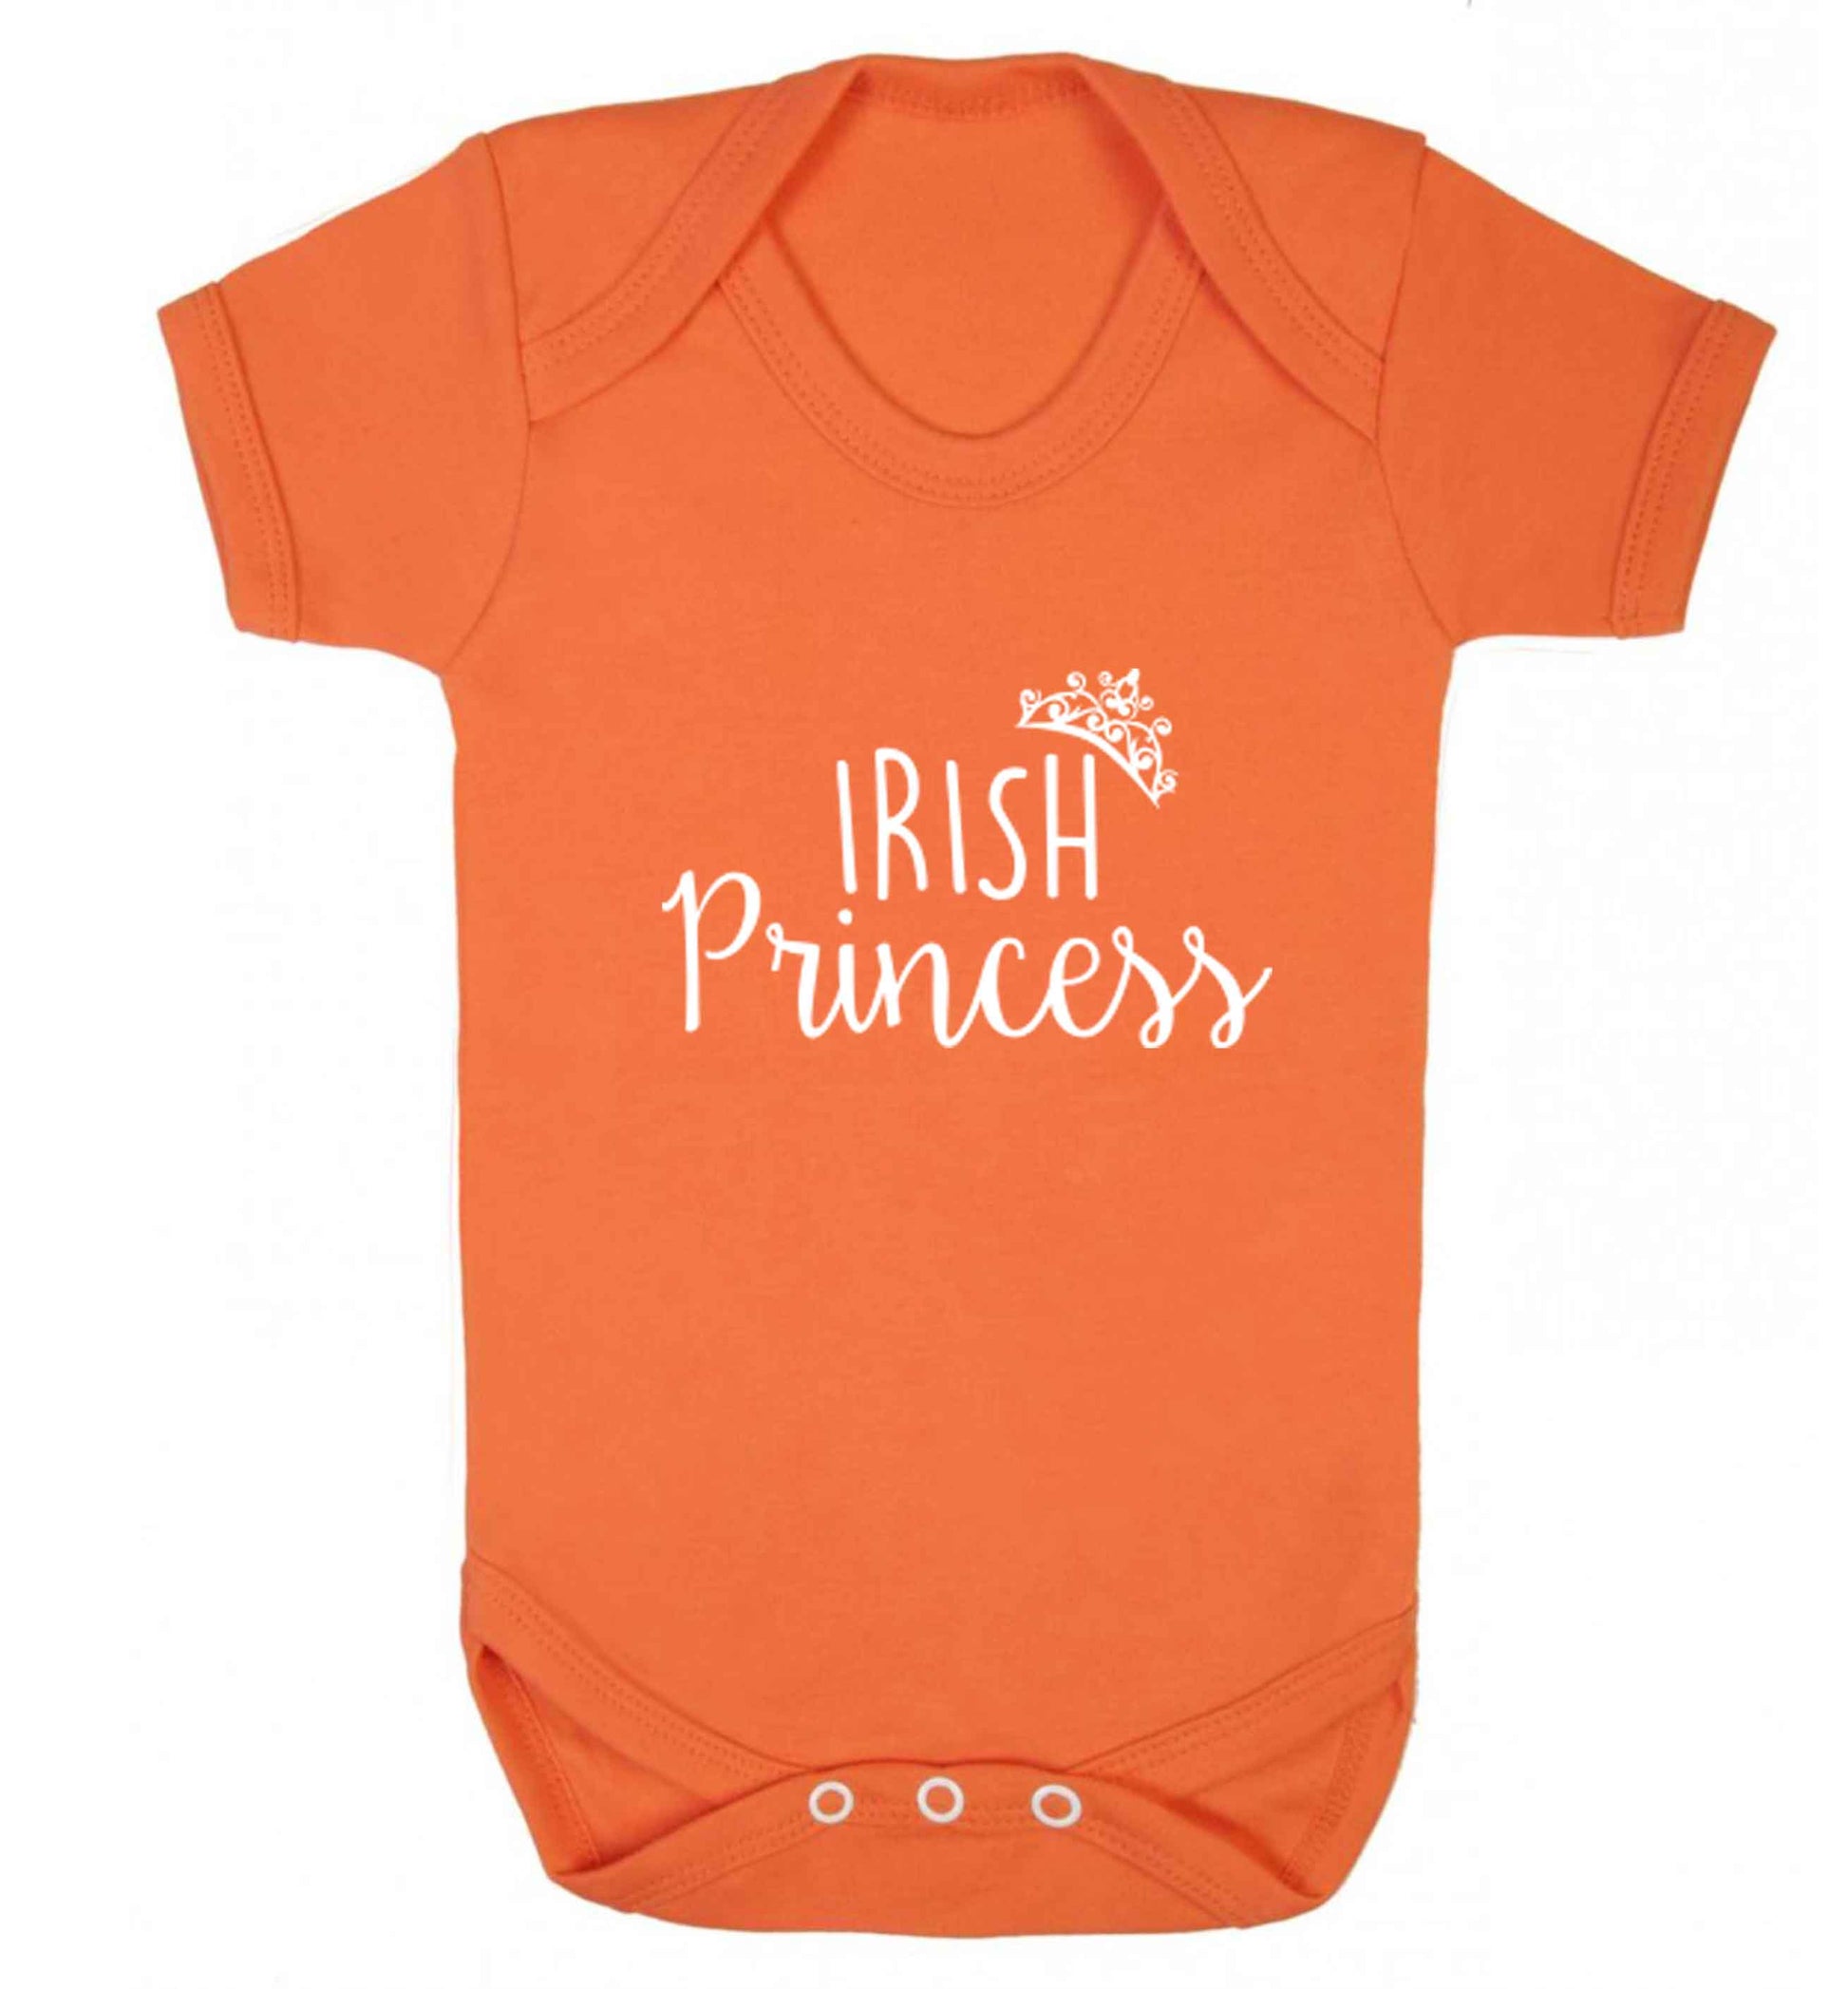 Irish princess baby vest orange 18-24 months